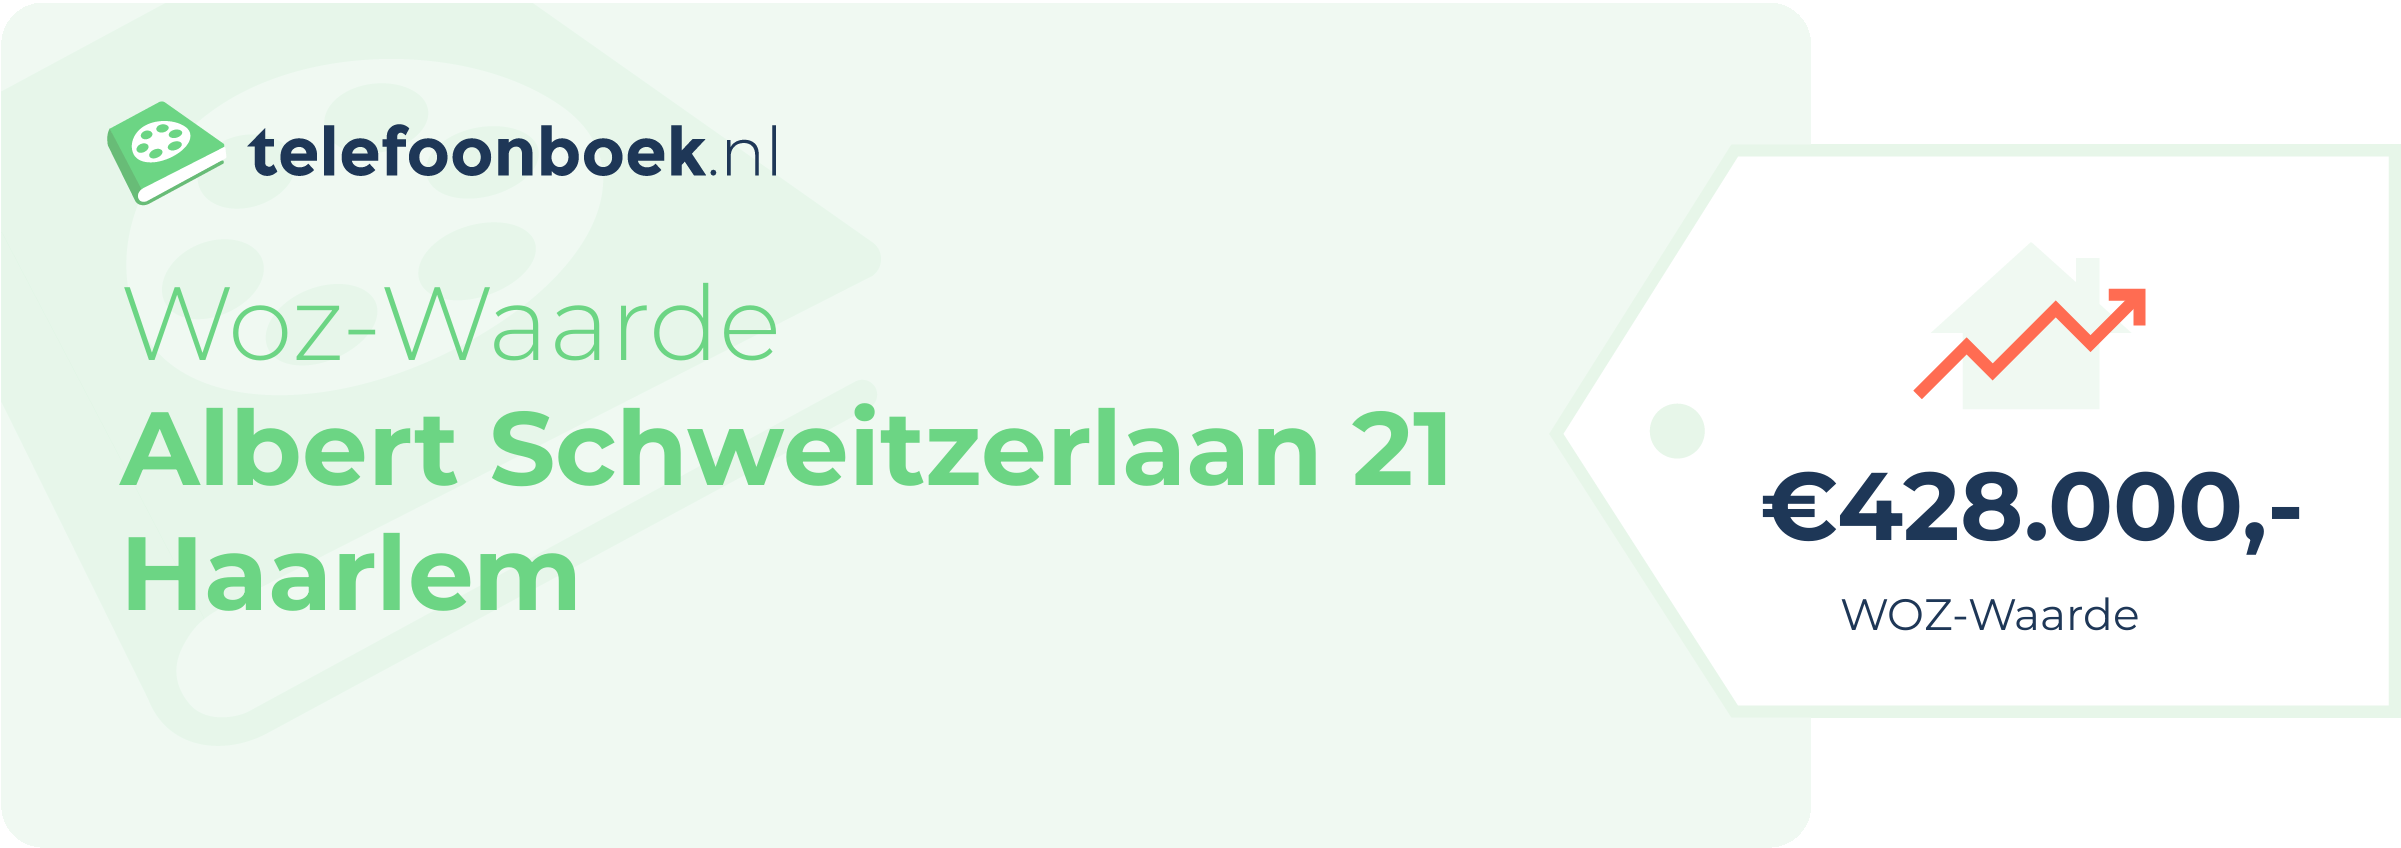 WOZ-waarde Albert Schweitzerlaan 21 Haarlem